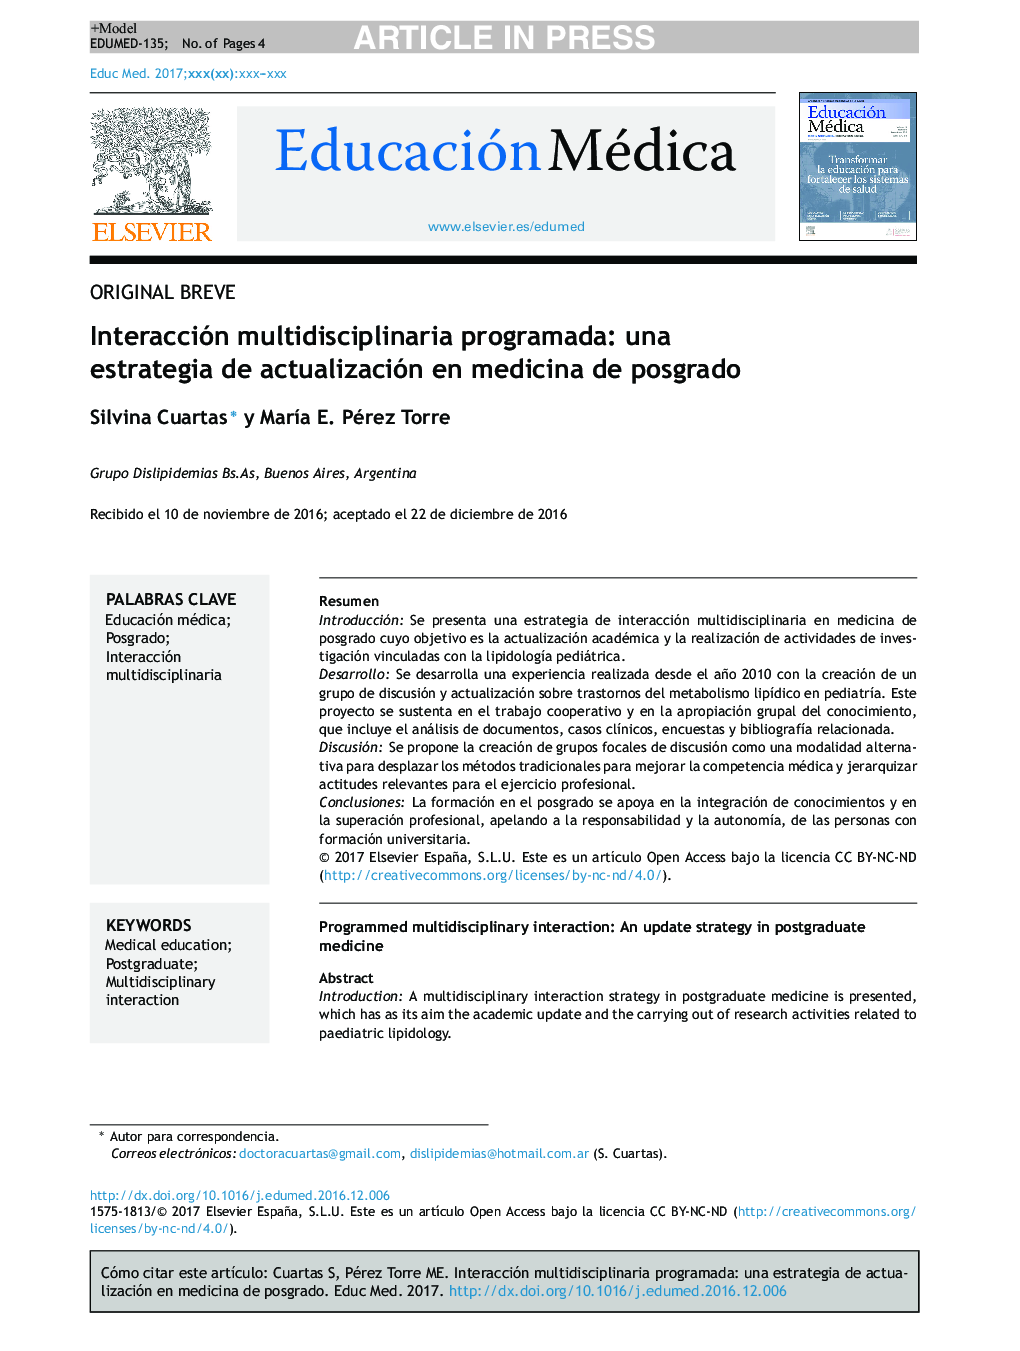 Interacción multidisciplinaria programada: una estrategia de actualización en medicina de posgrado